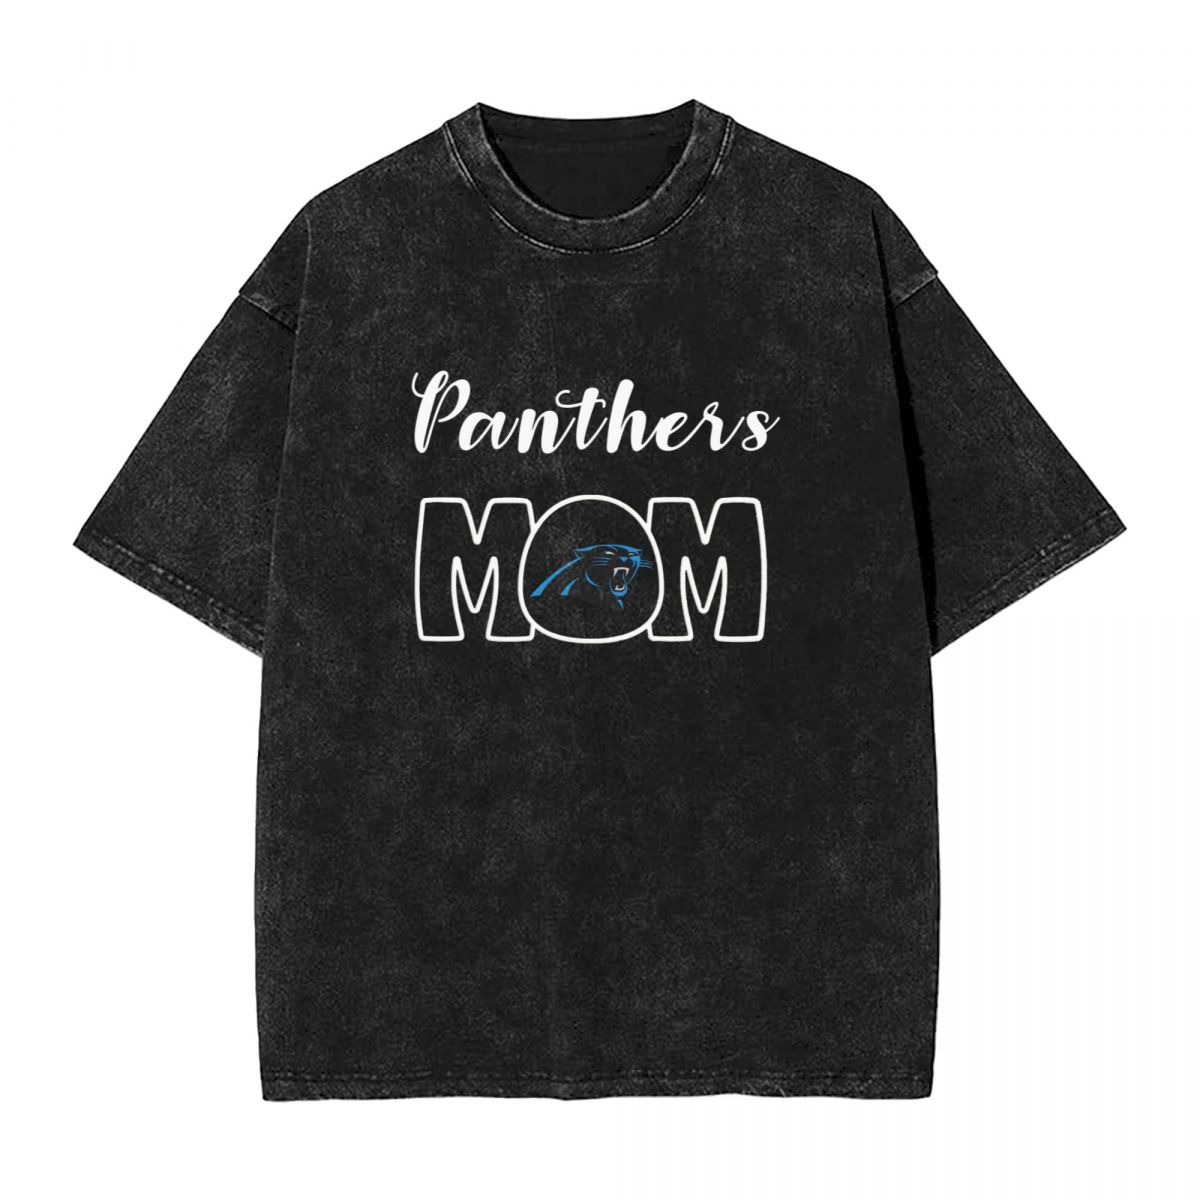 Carolina Panthers Mom Washed Oversized Vintage Men's T-Shirt